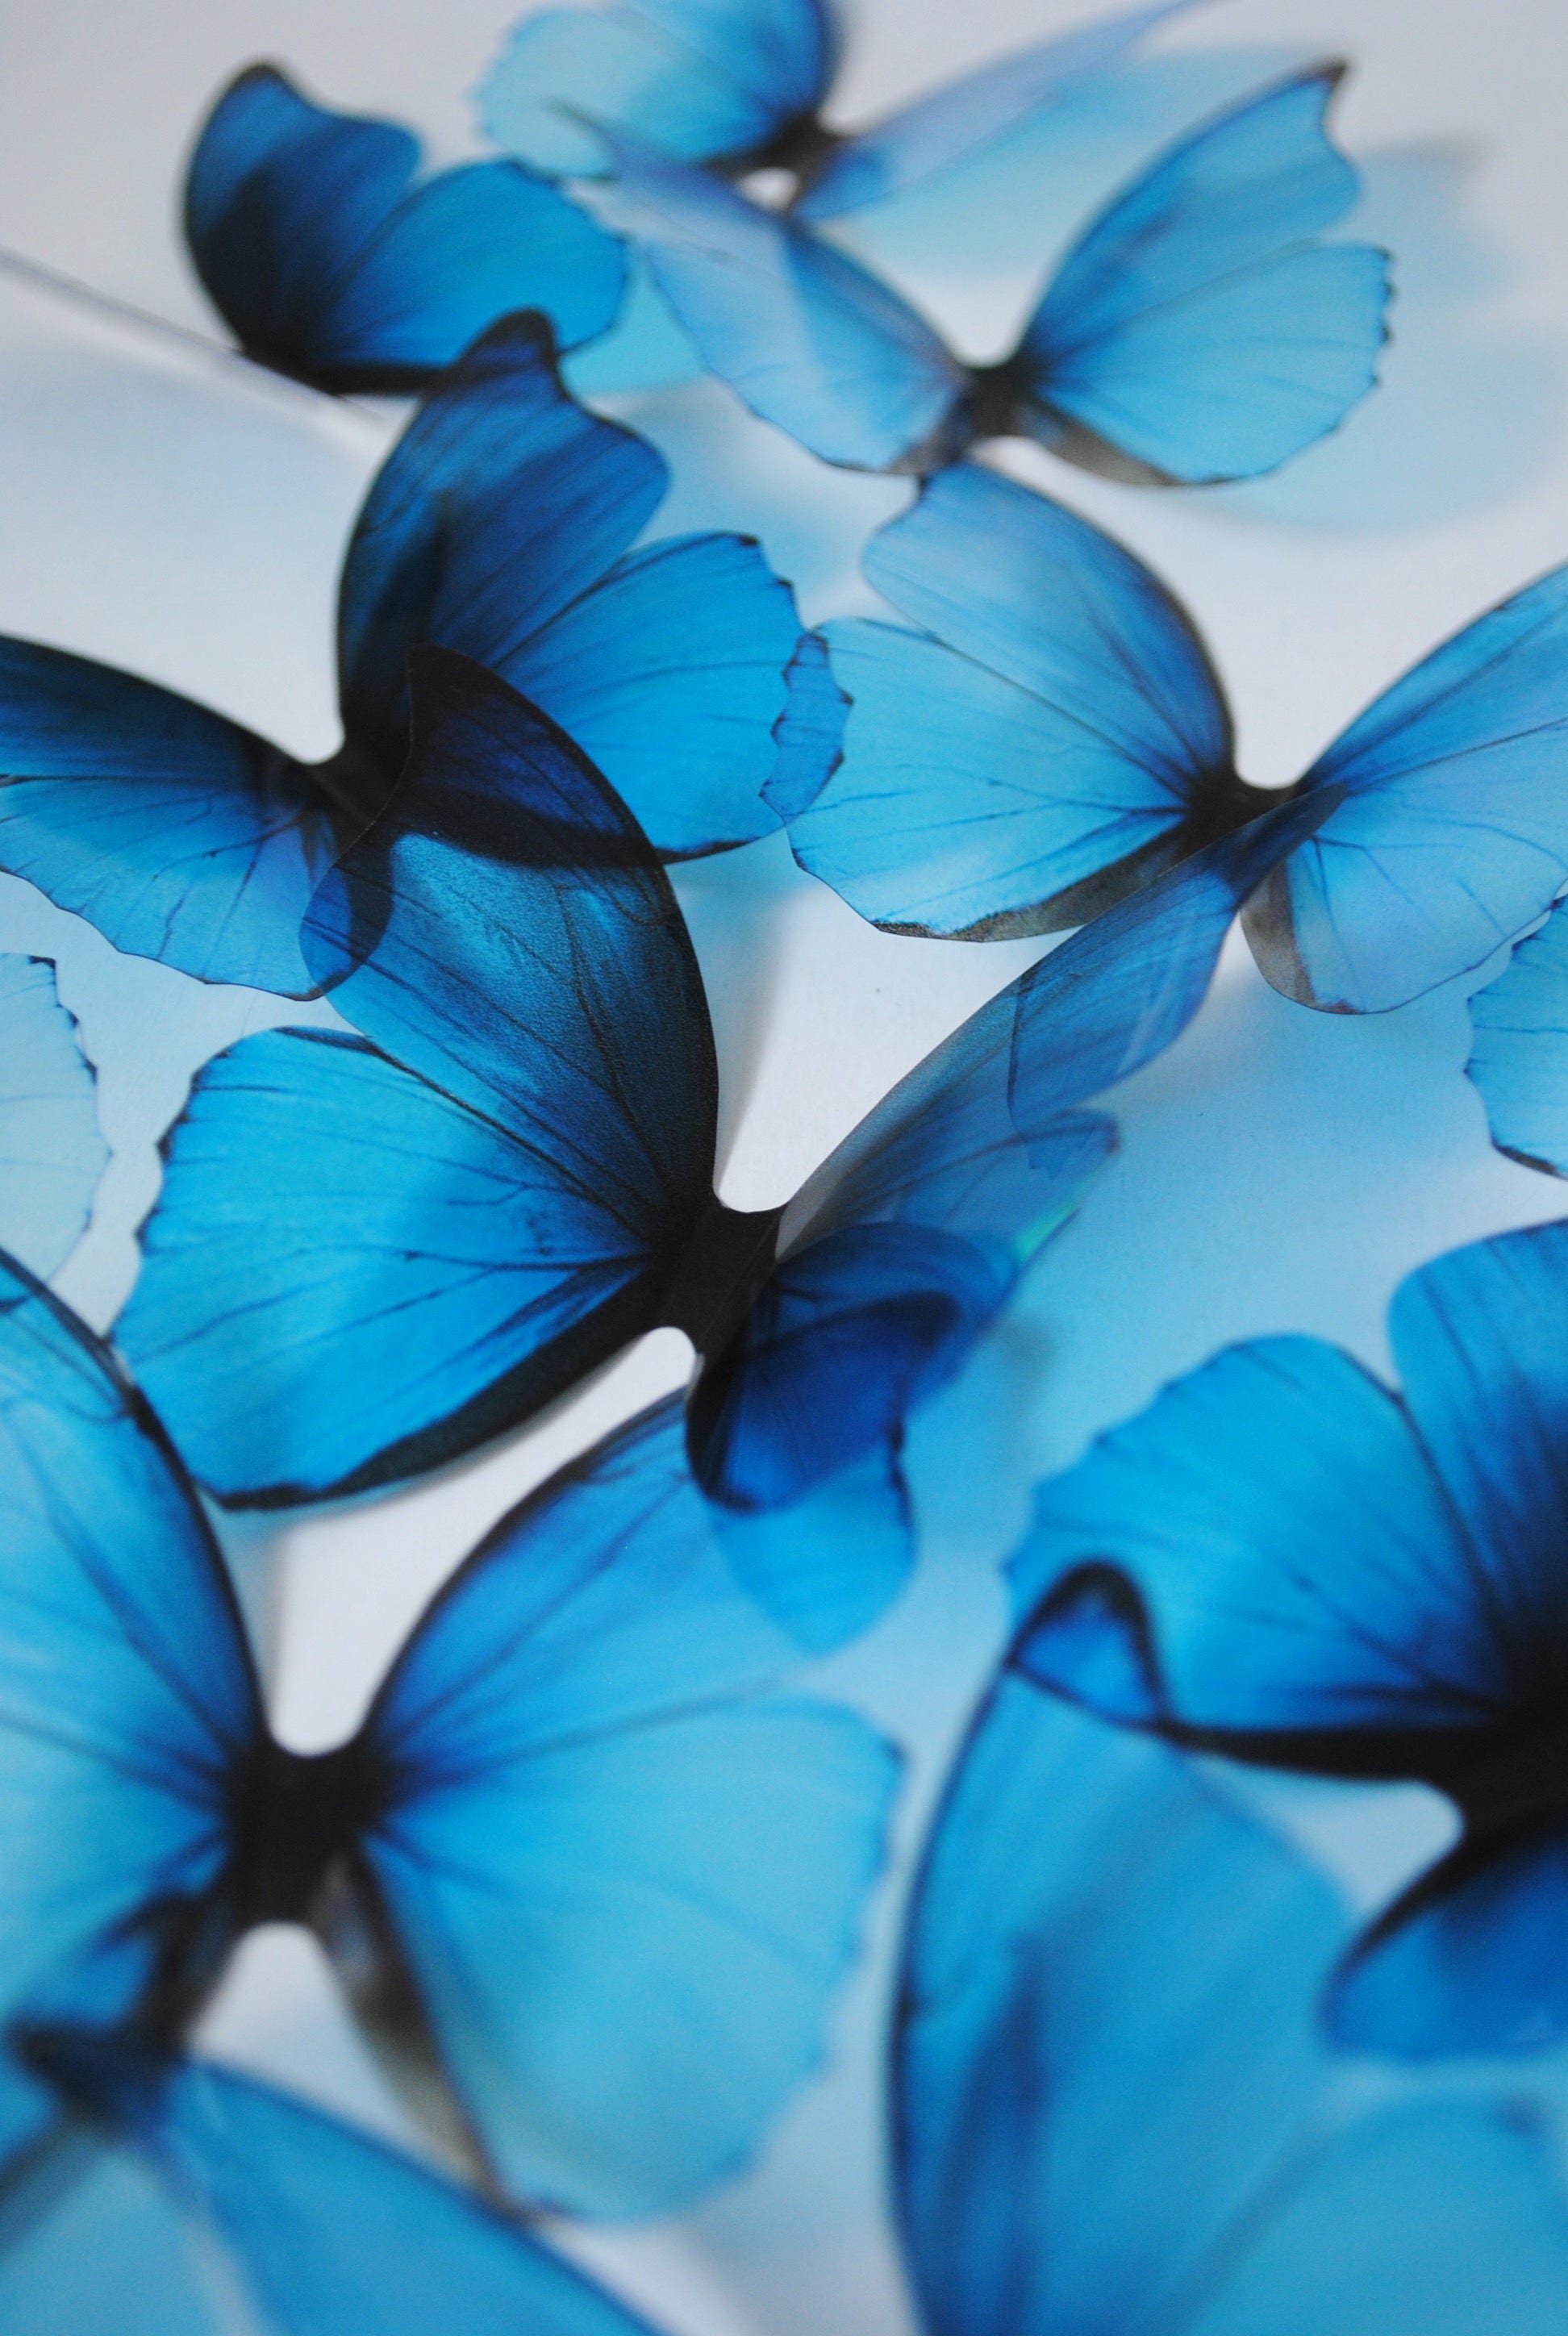 12 blue plastic craft butterflies-pf751566bl